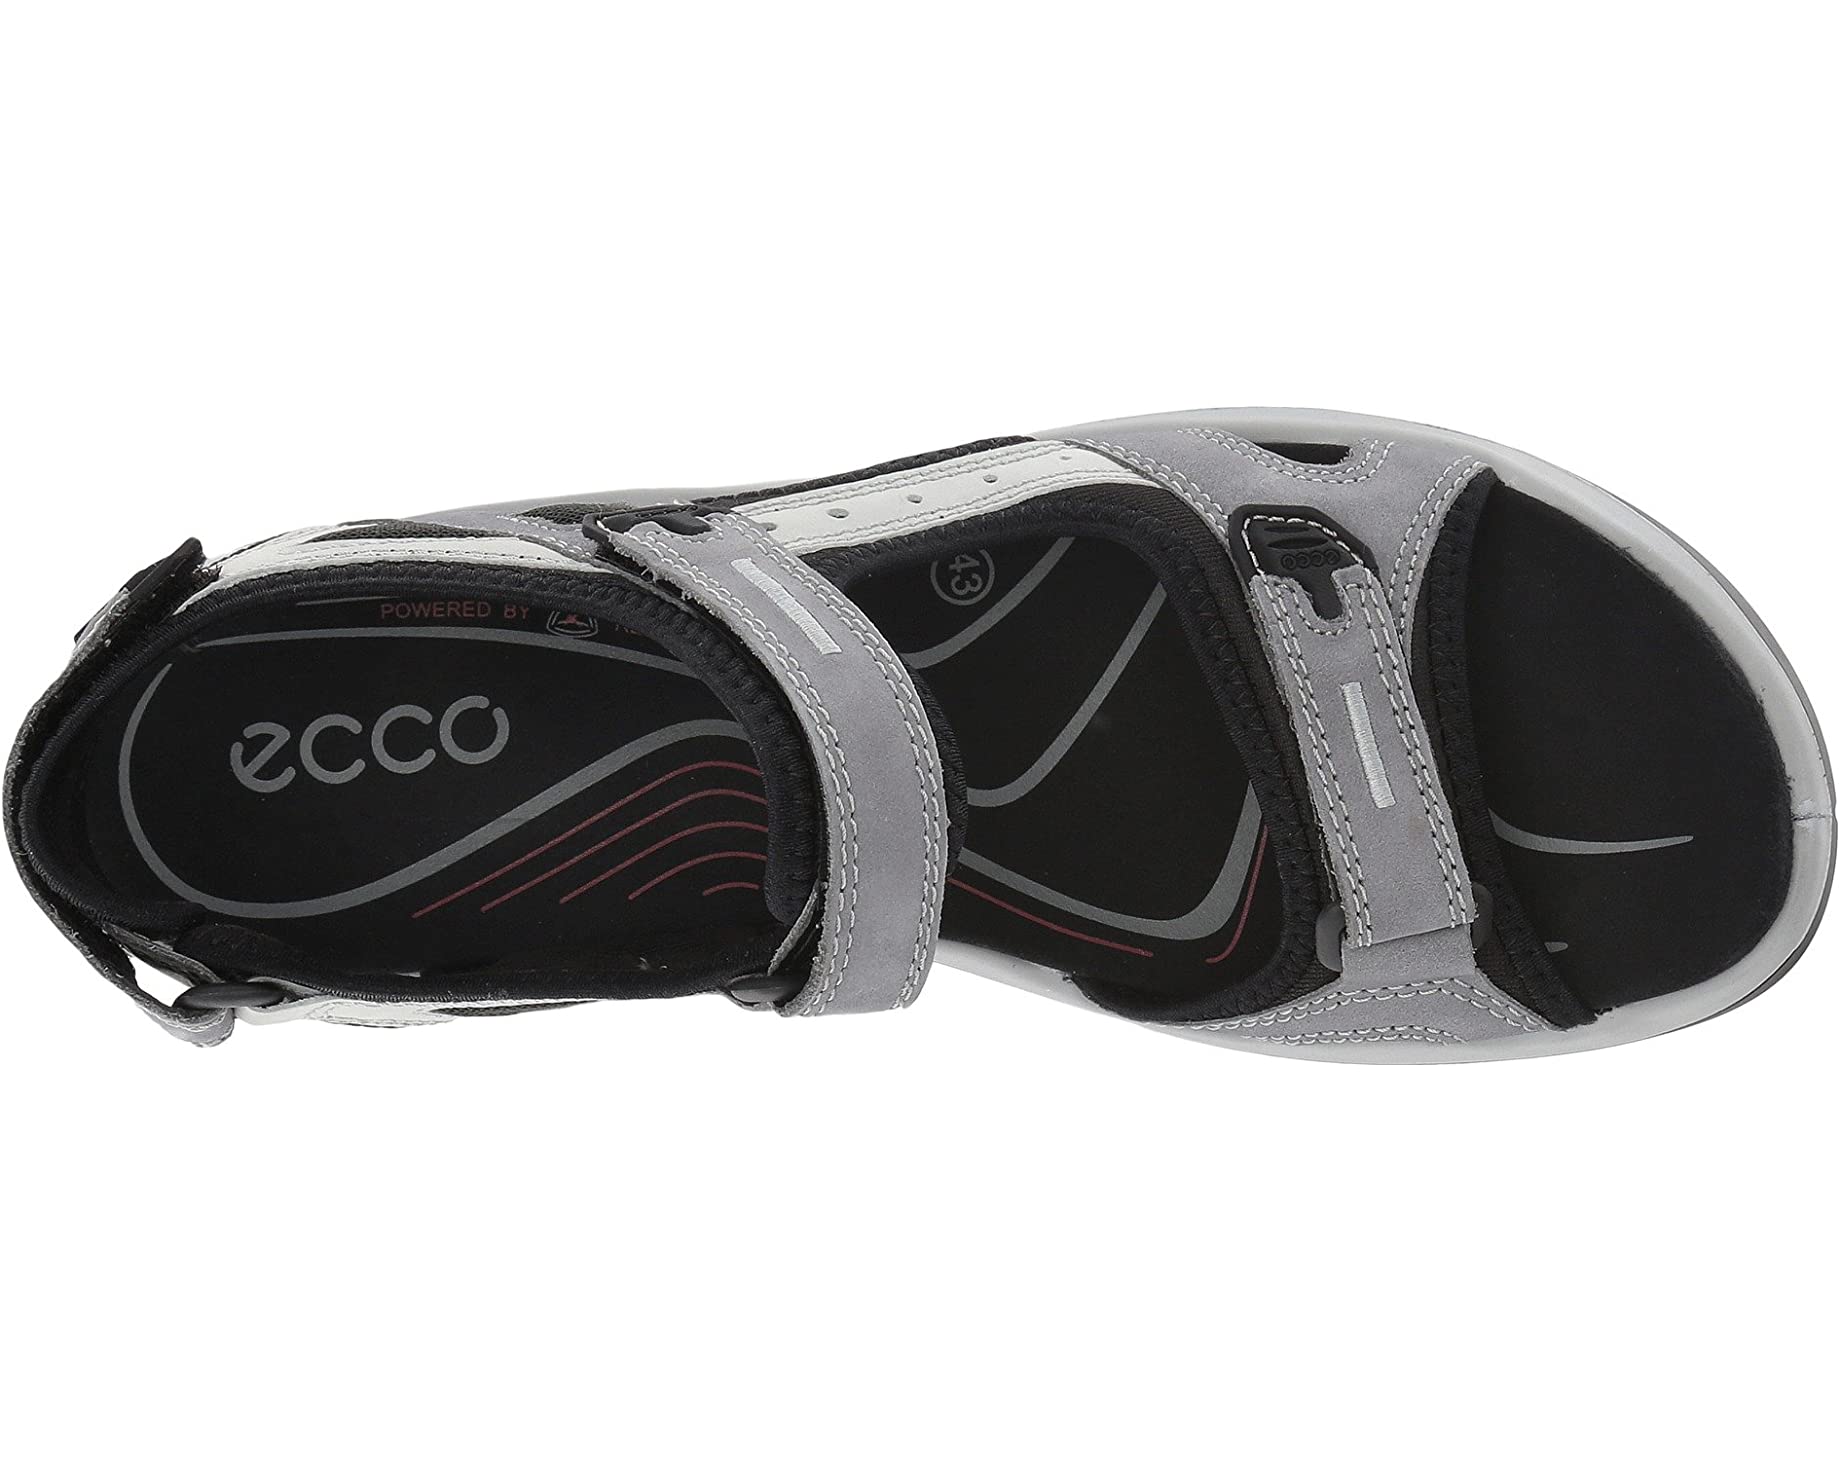 Сандалии Yucatan Sandal ECCO Sport, титан сандалии yucatan coast sandal ecco sport цвет black black